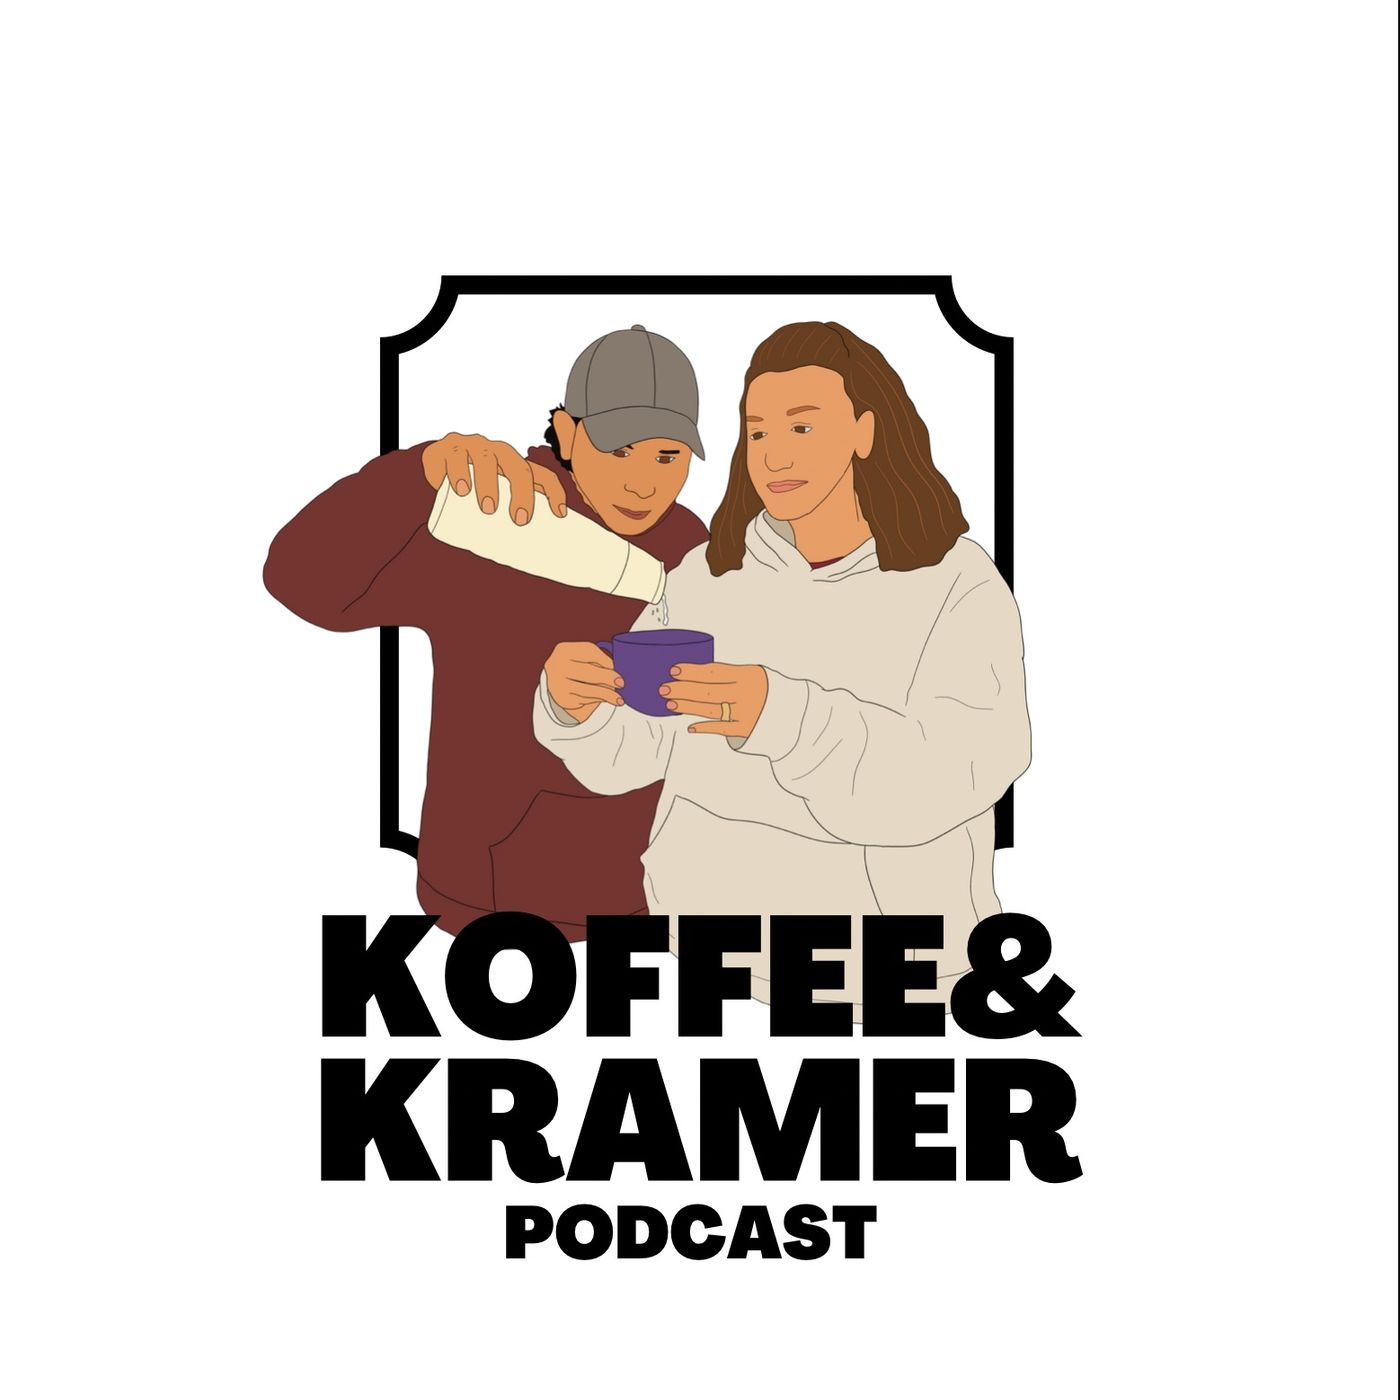 KOFFEE AND KRAMER EPISODE 39